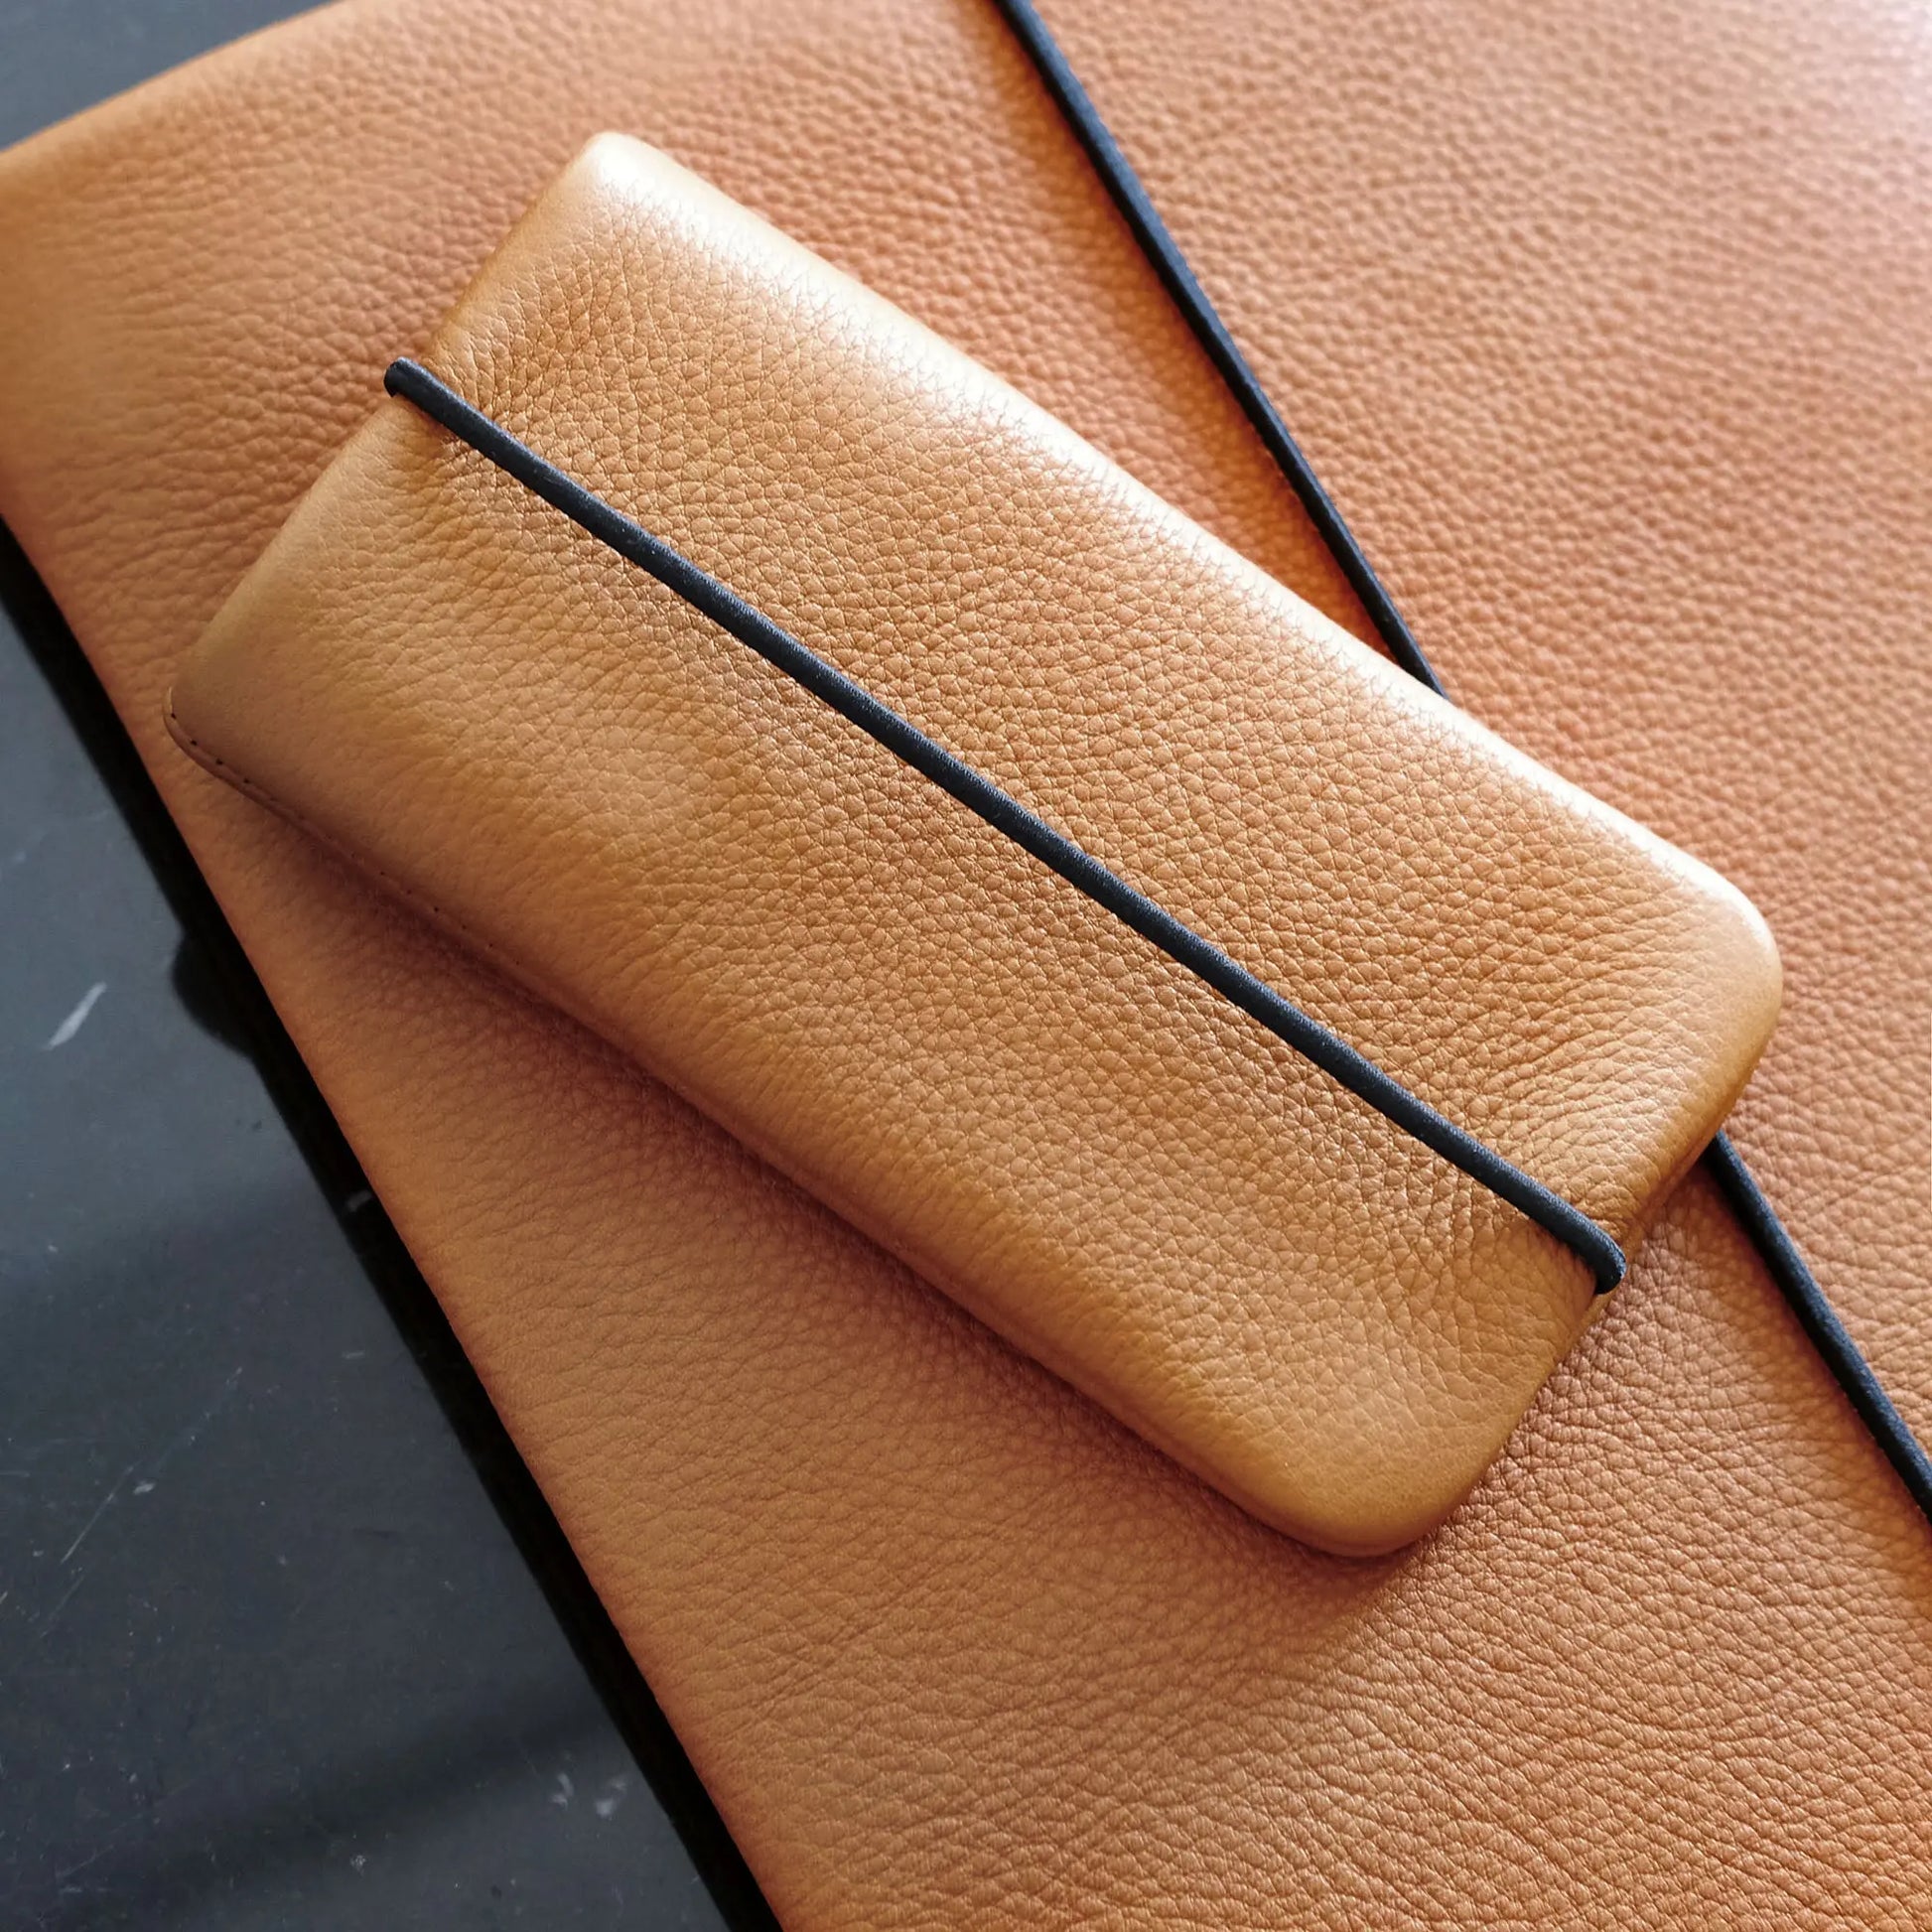 Handyhülle aus Leder in orange liegt auf passender Notebookhülle aus Leder